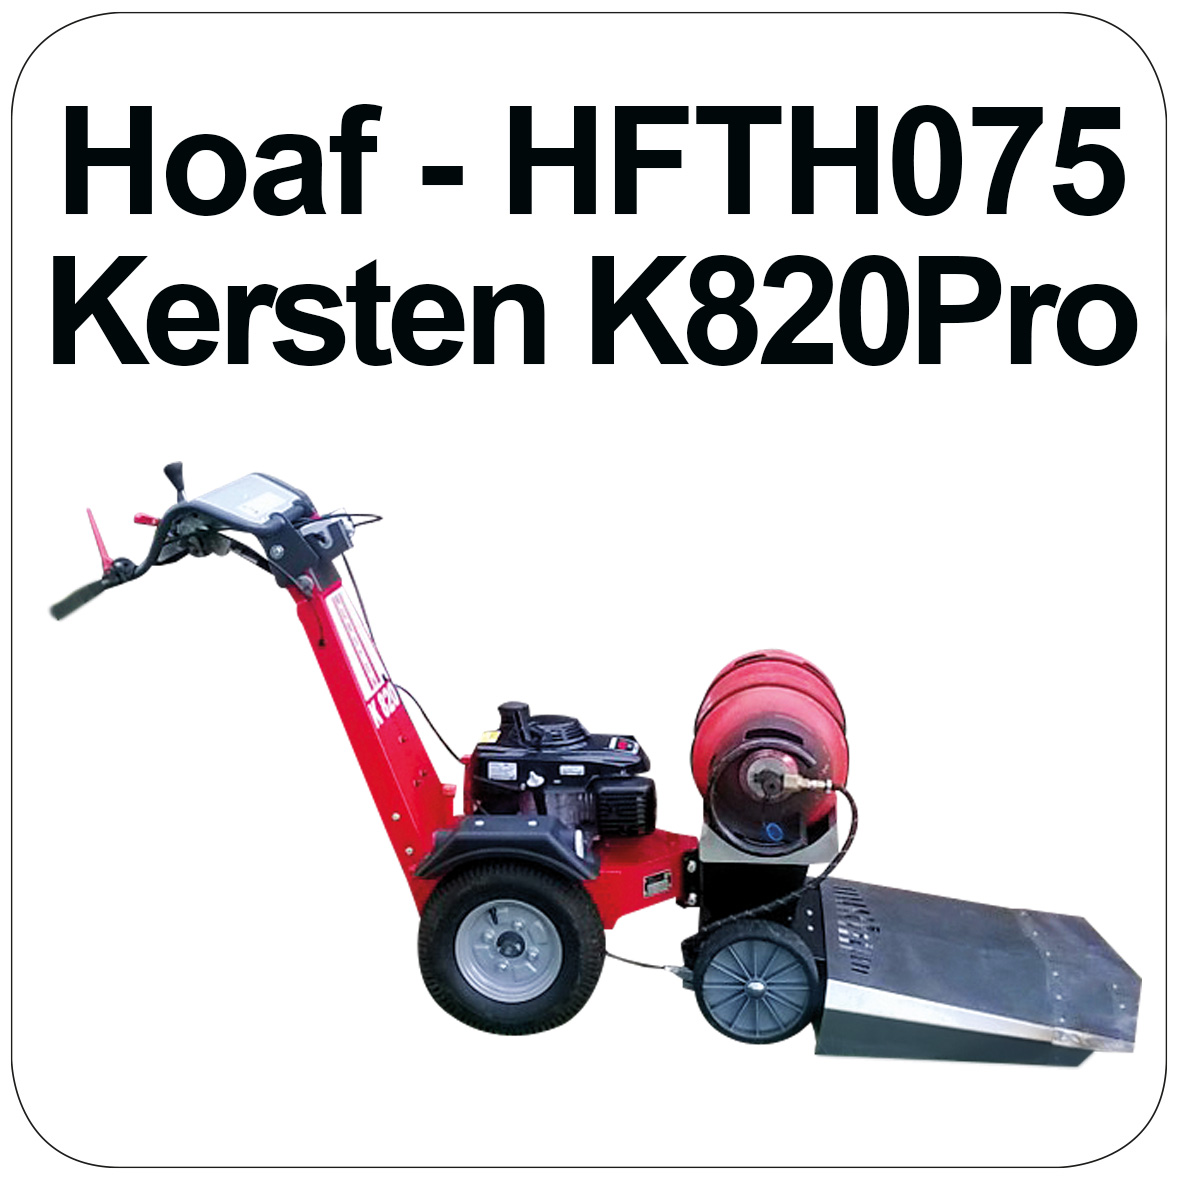 Hoaf Kersten-K820 Pro Weed Burner - HFTH075-K820